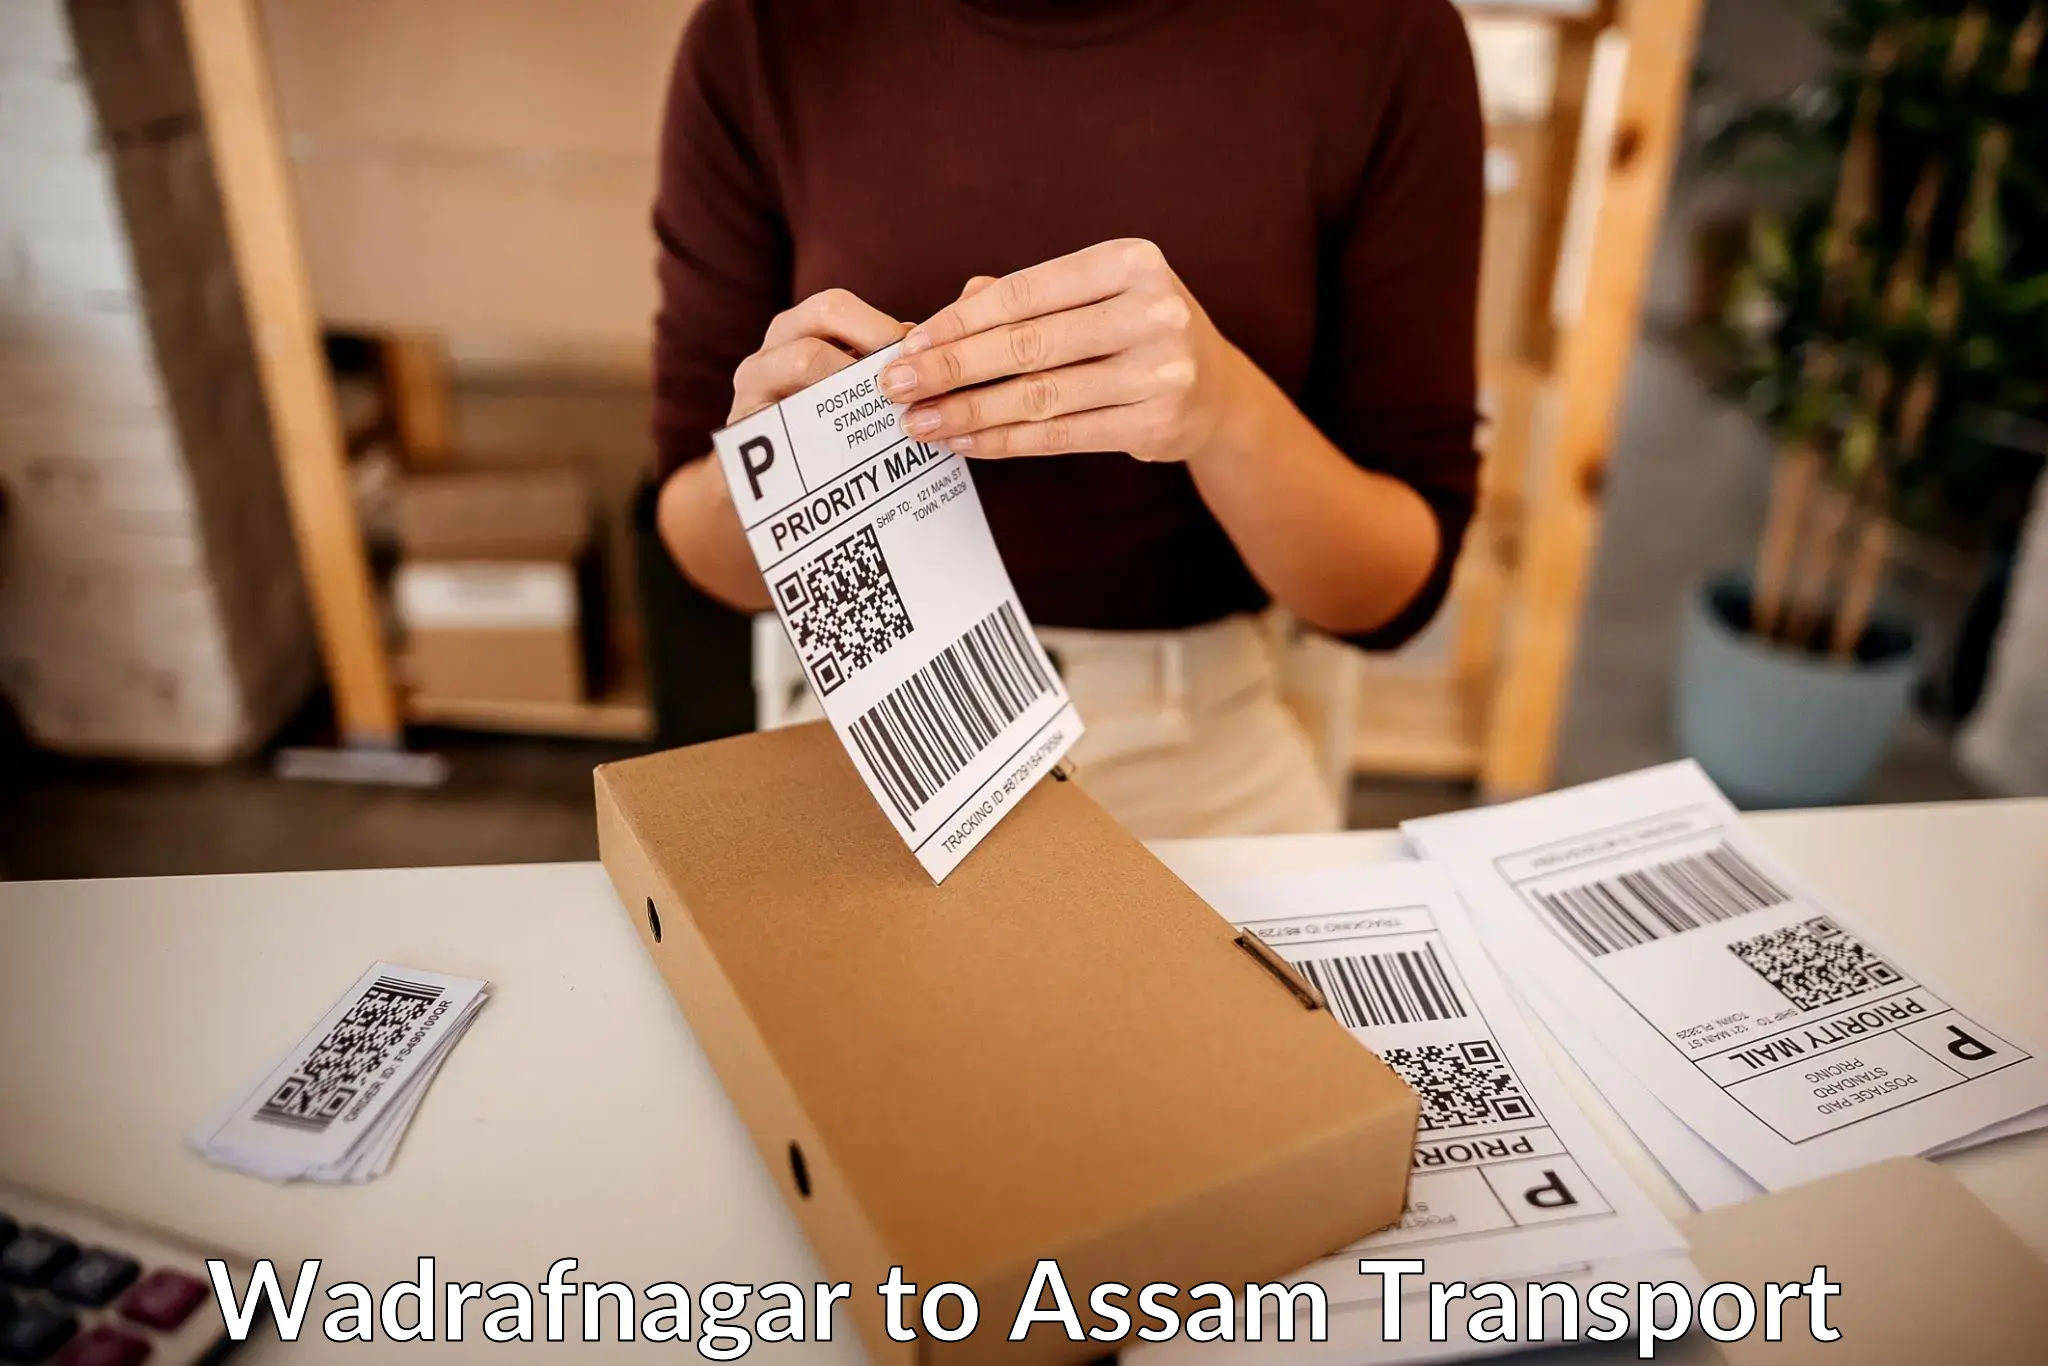 Goods delivery service Wadrafnagar to Khetri